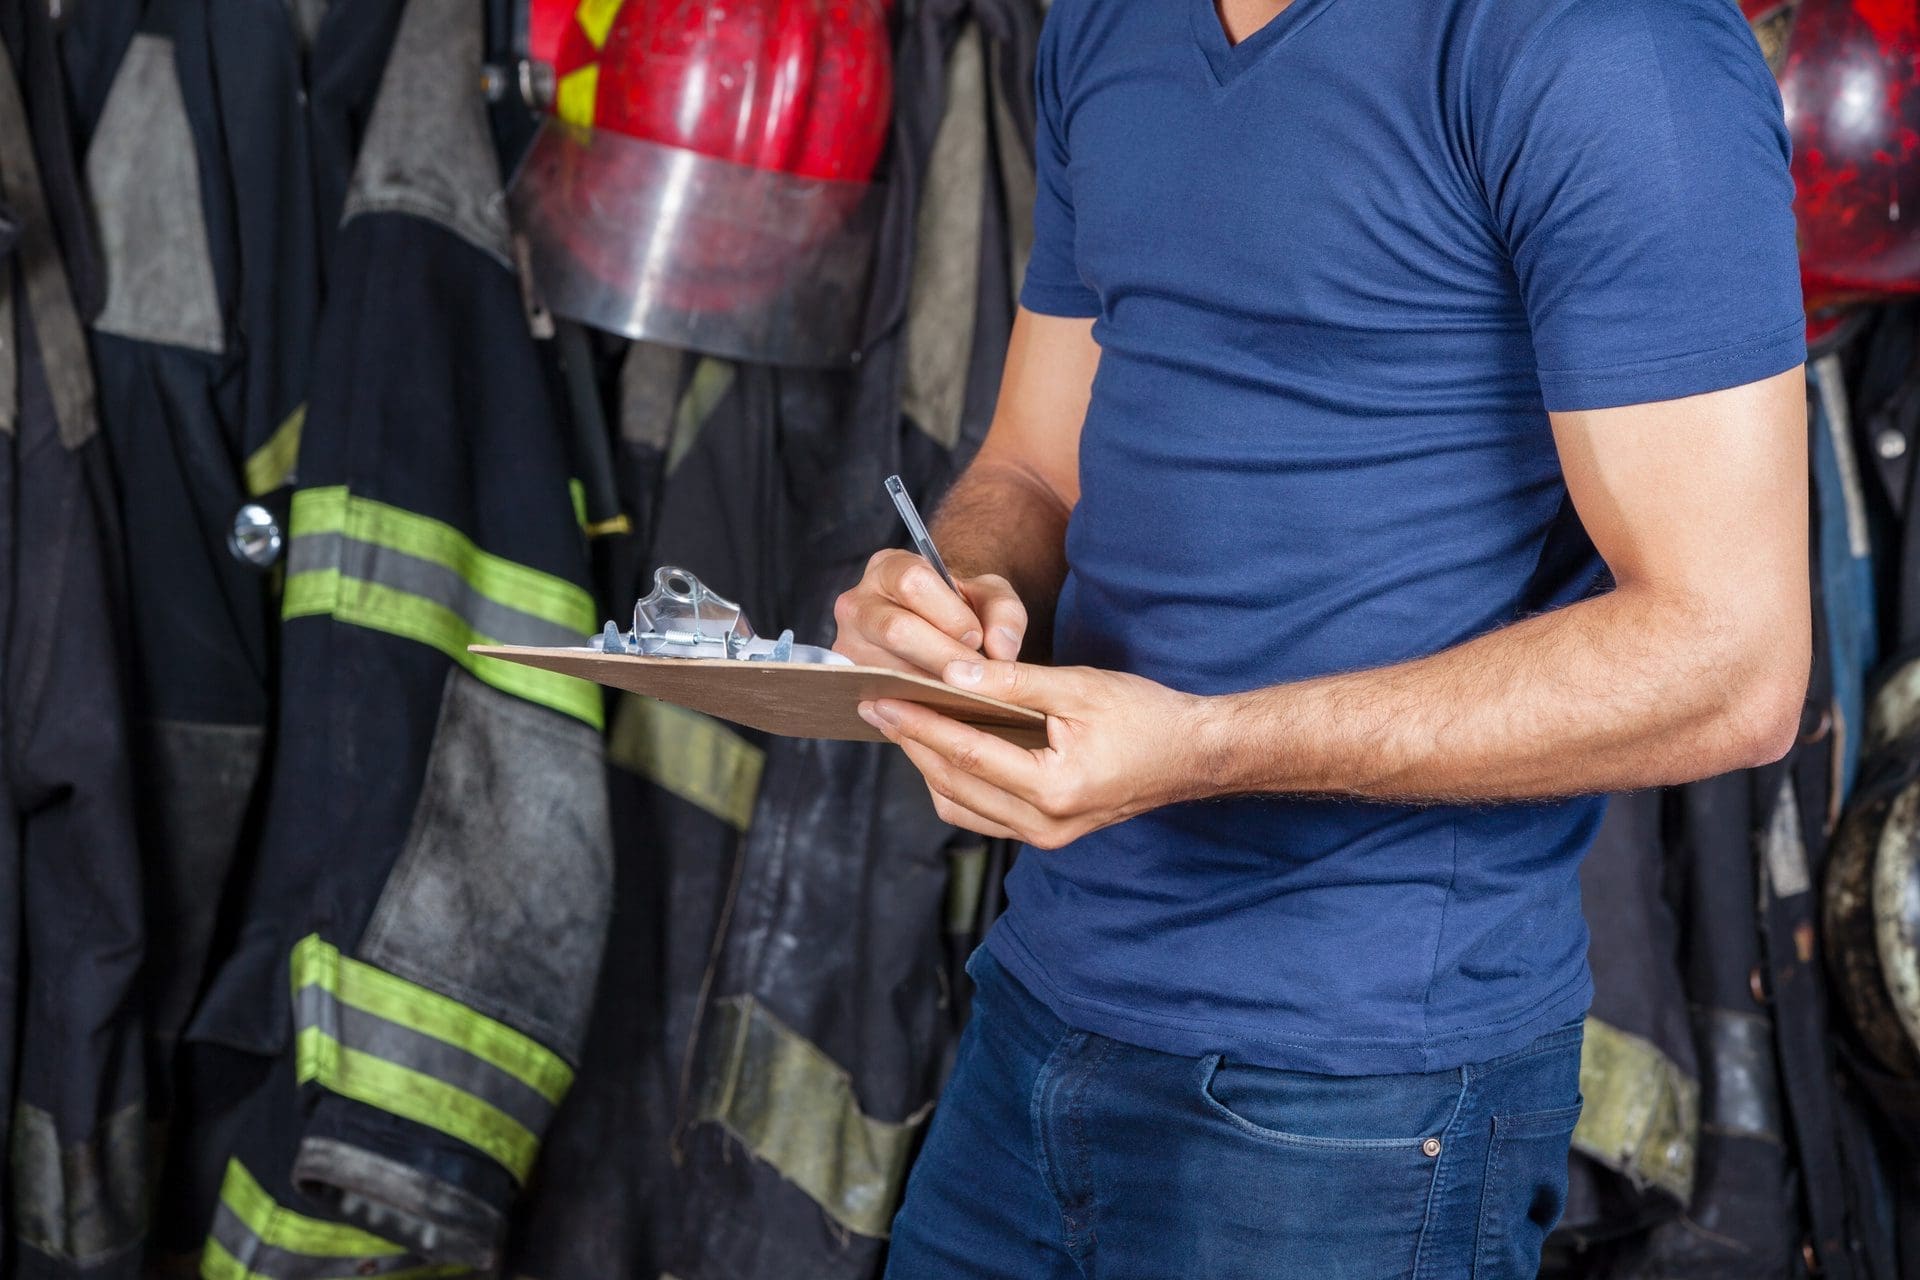 Brandschadensanierung: Den Schaden richtig dokumentieren - Häufig wird vor der Beauftragung von Brandschadensanierer Firmen erst ein Schadengutachten erstellt für die Versicherung (© Tyler Olson / stock.adobe.com)